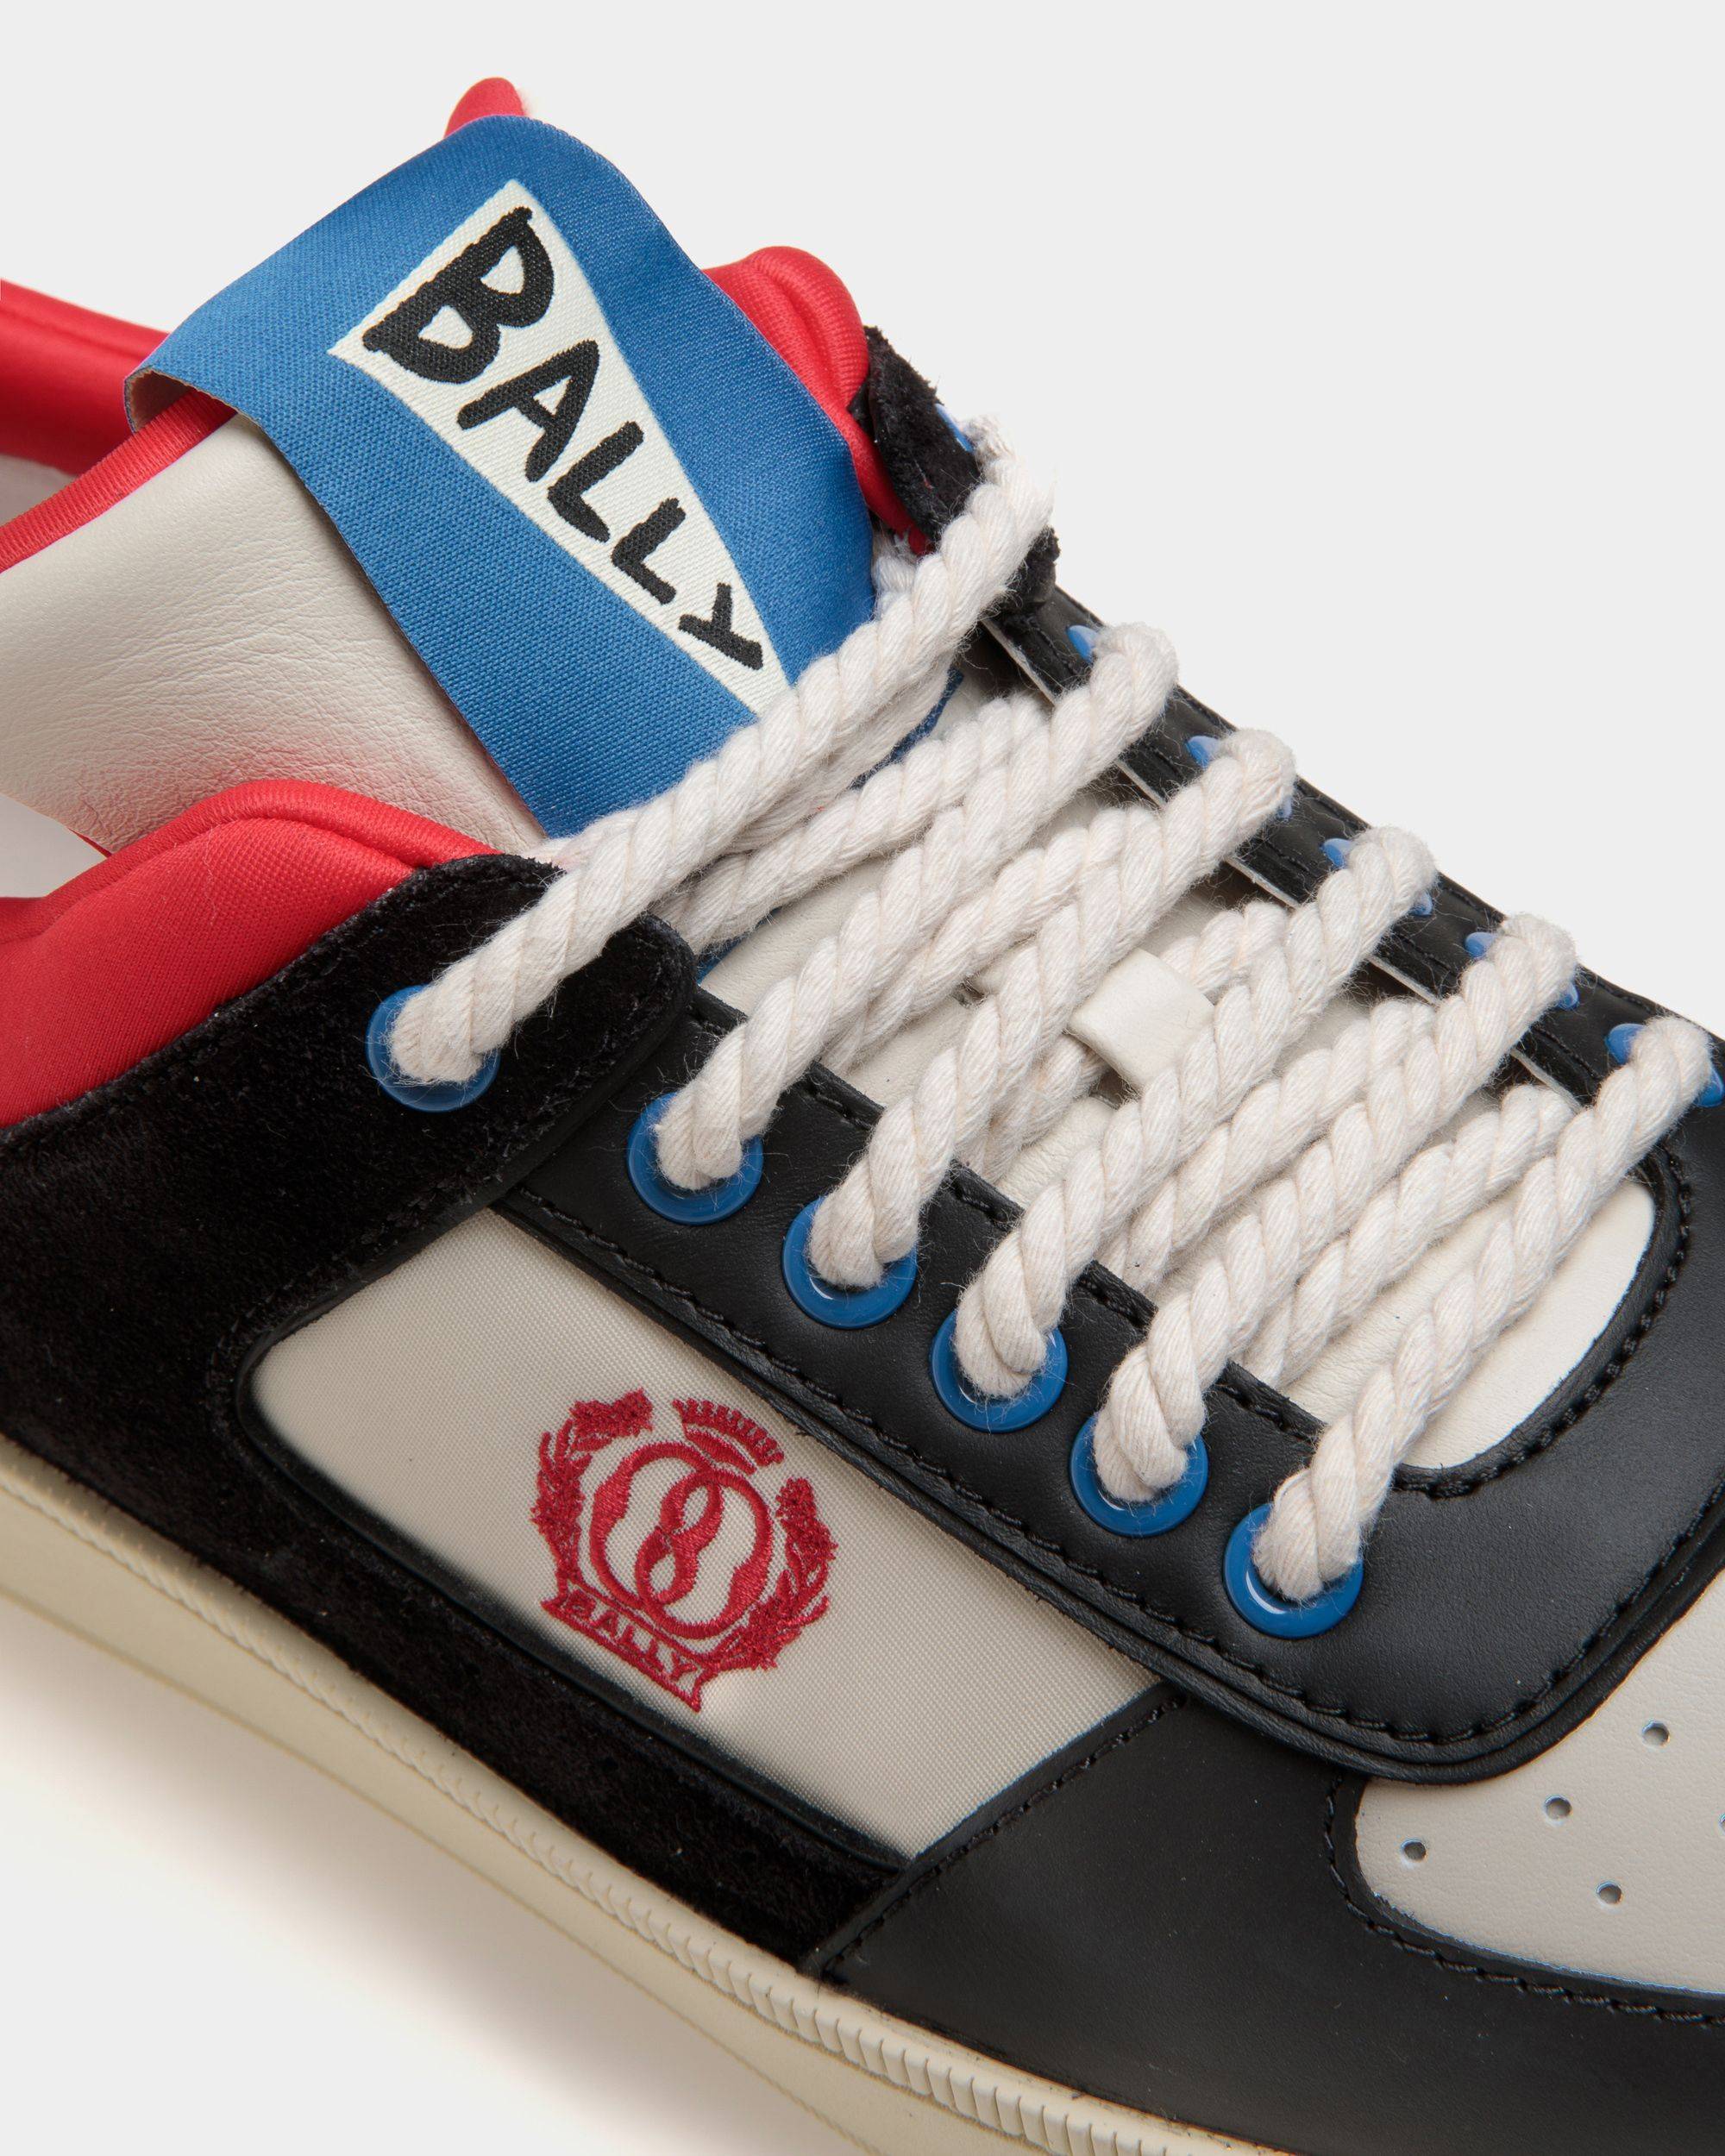 Raise | Herren-Sneaker aus mehrfarbigem Leder | Bally | Still Life Detail